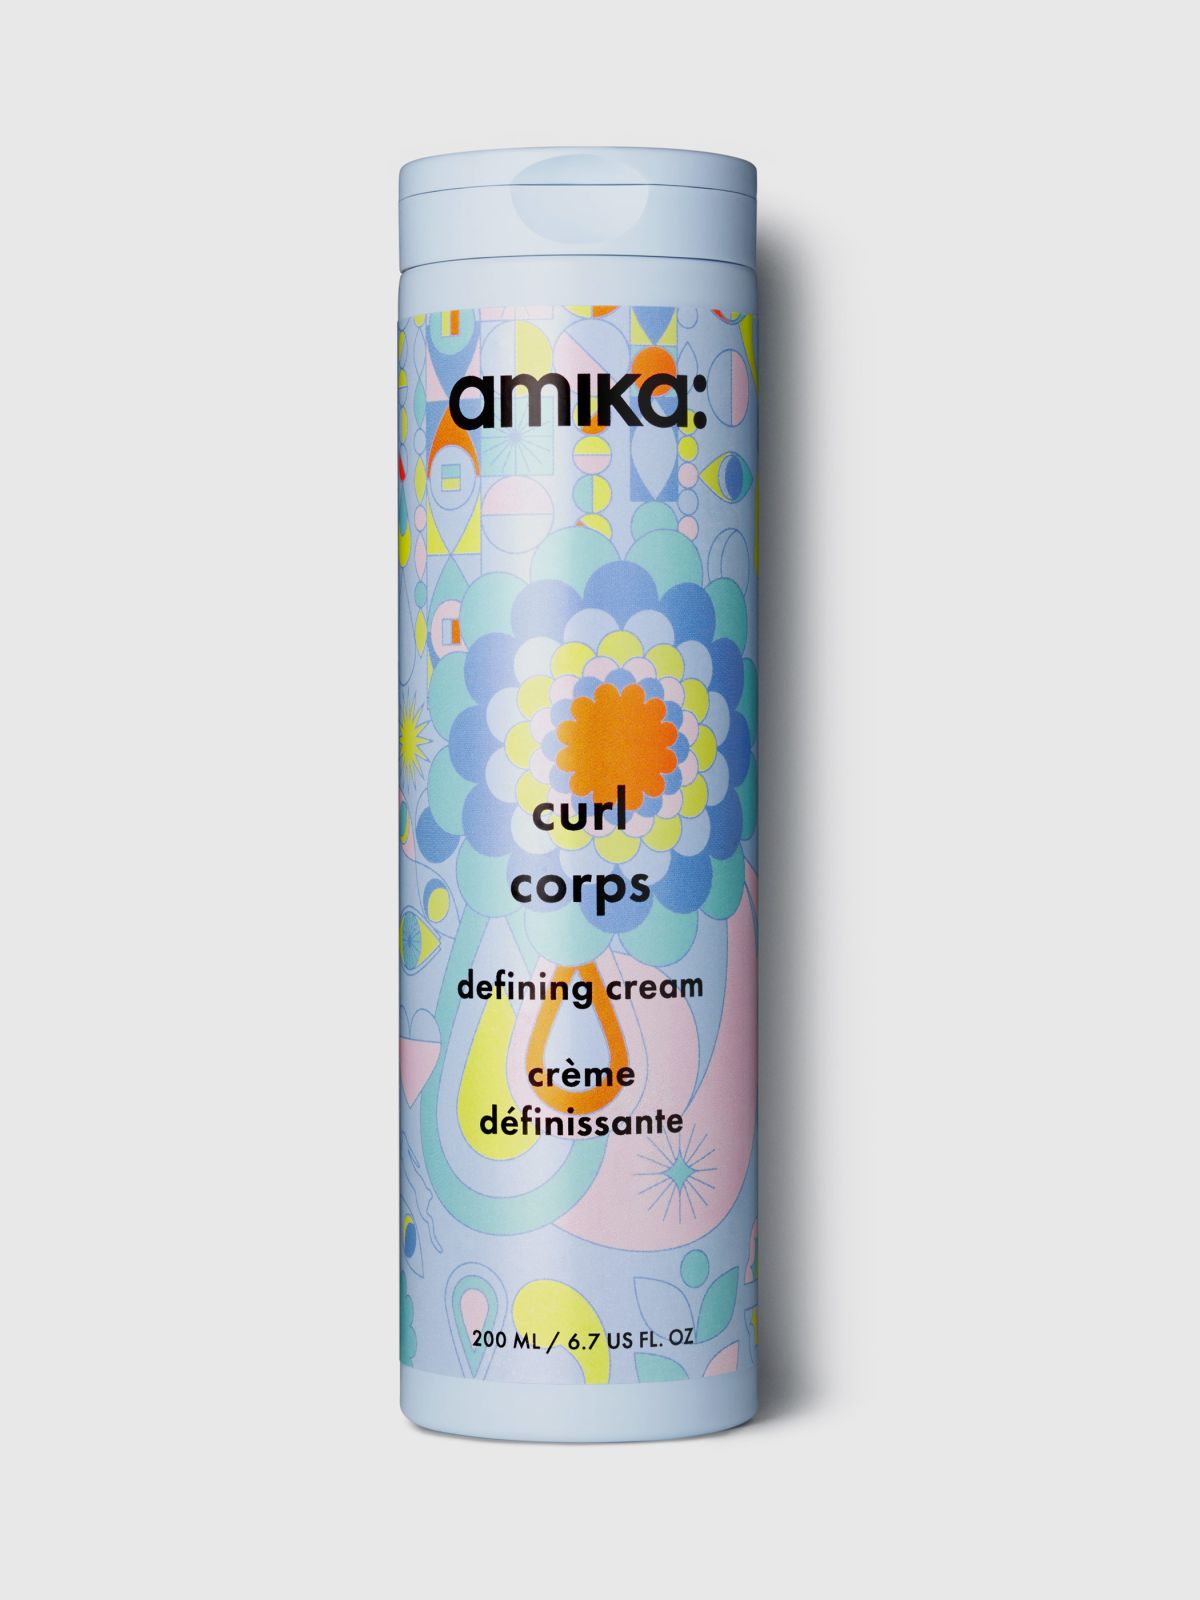  קרם לחות להגדרת תלתלים Curl corps defining cream 200 ml של amika